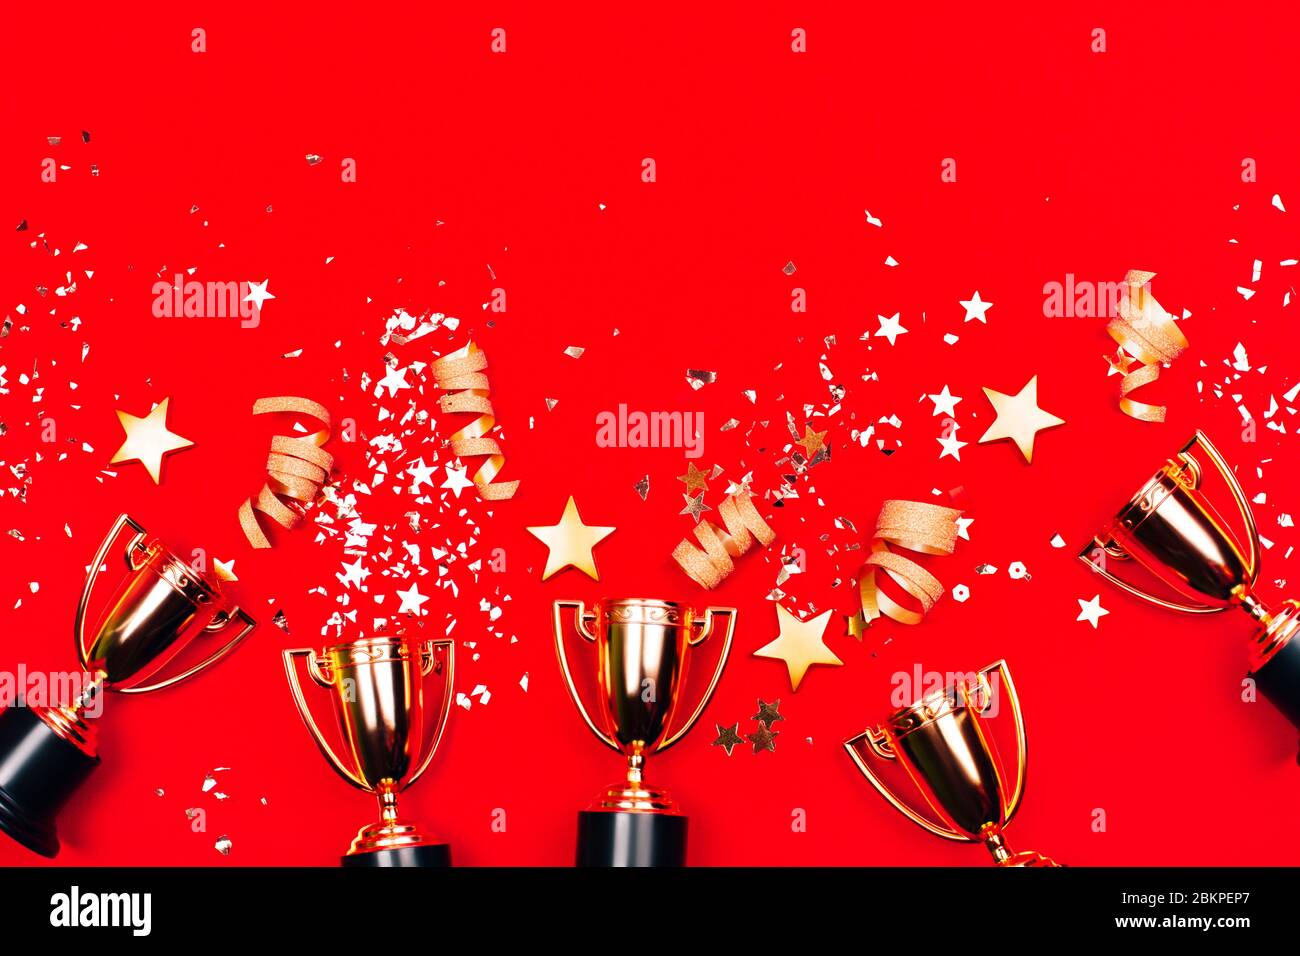 Trois coupes dorées avec confetti sur fond rouge. Style plat. Concept de concours. Banque D'Images